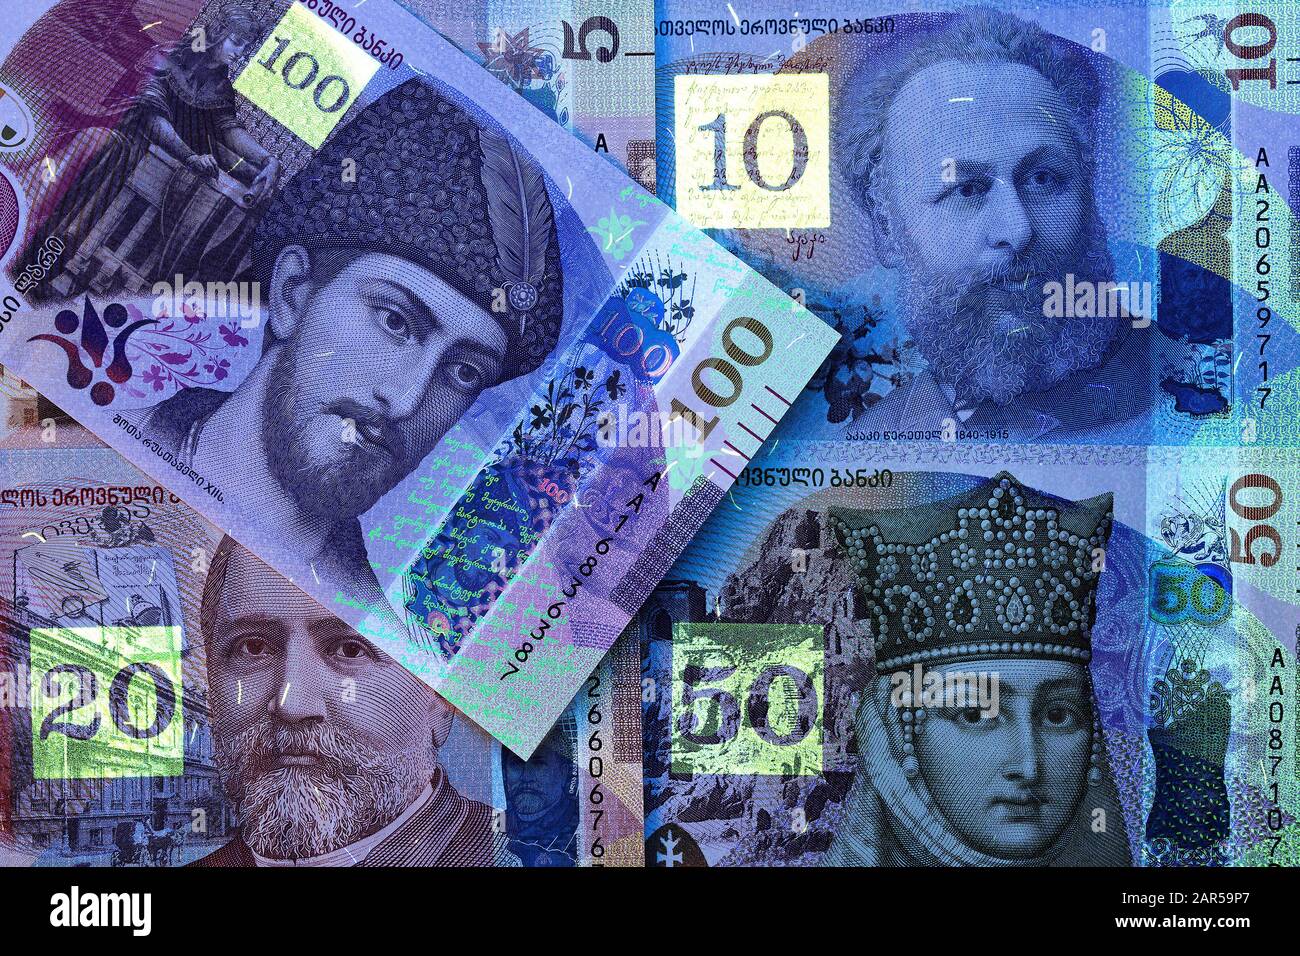 Georgian money - lari in uv rays Stock Photo